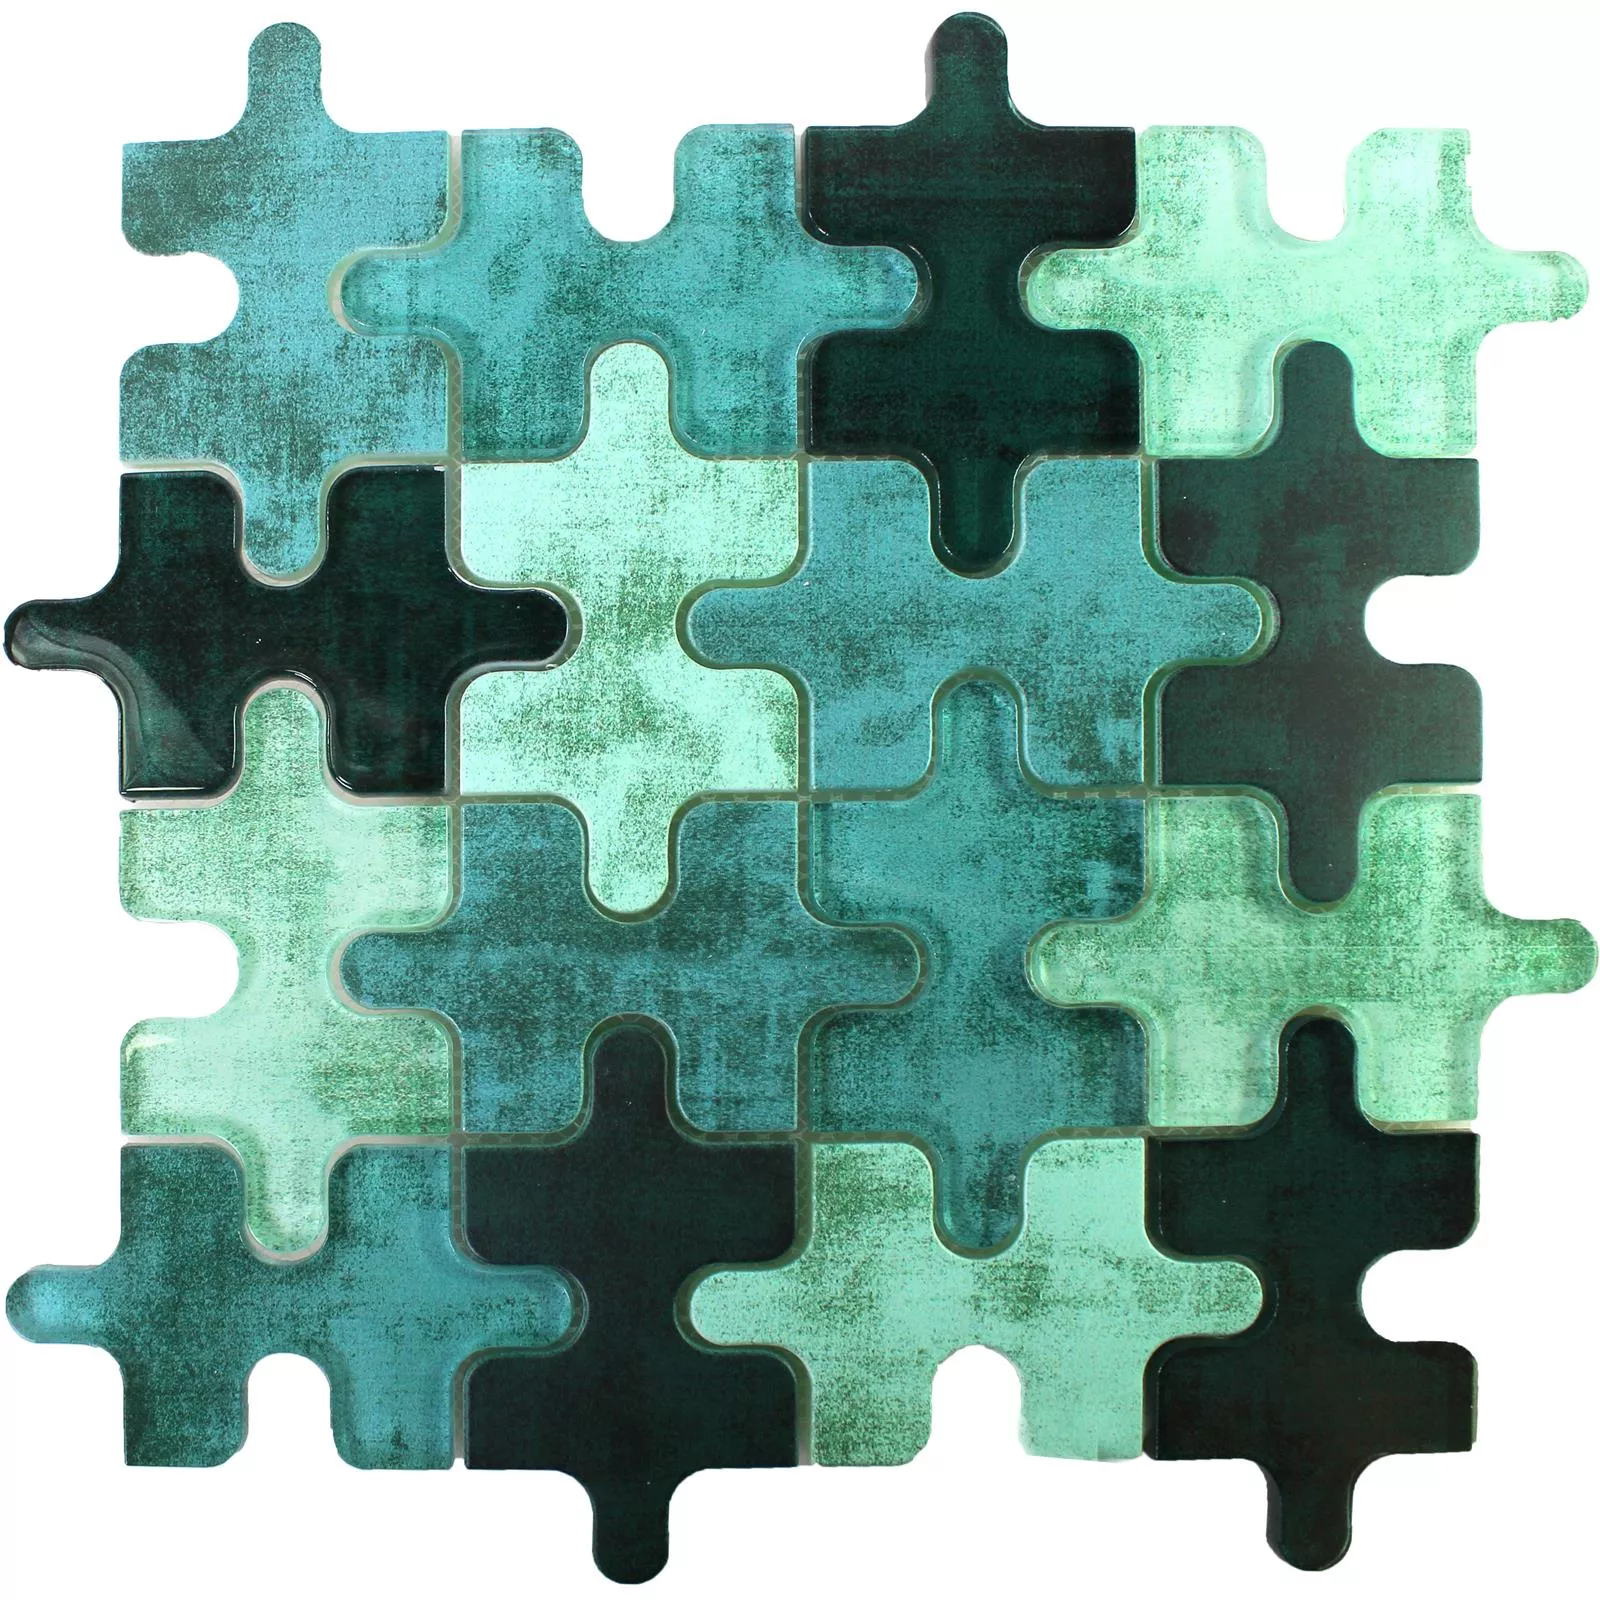 Glass Mosaikk Fliser Puzzle Grønn